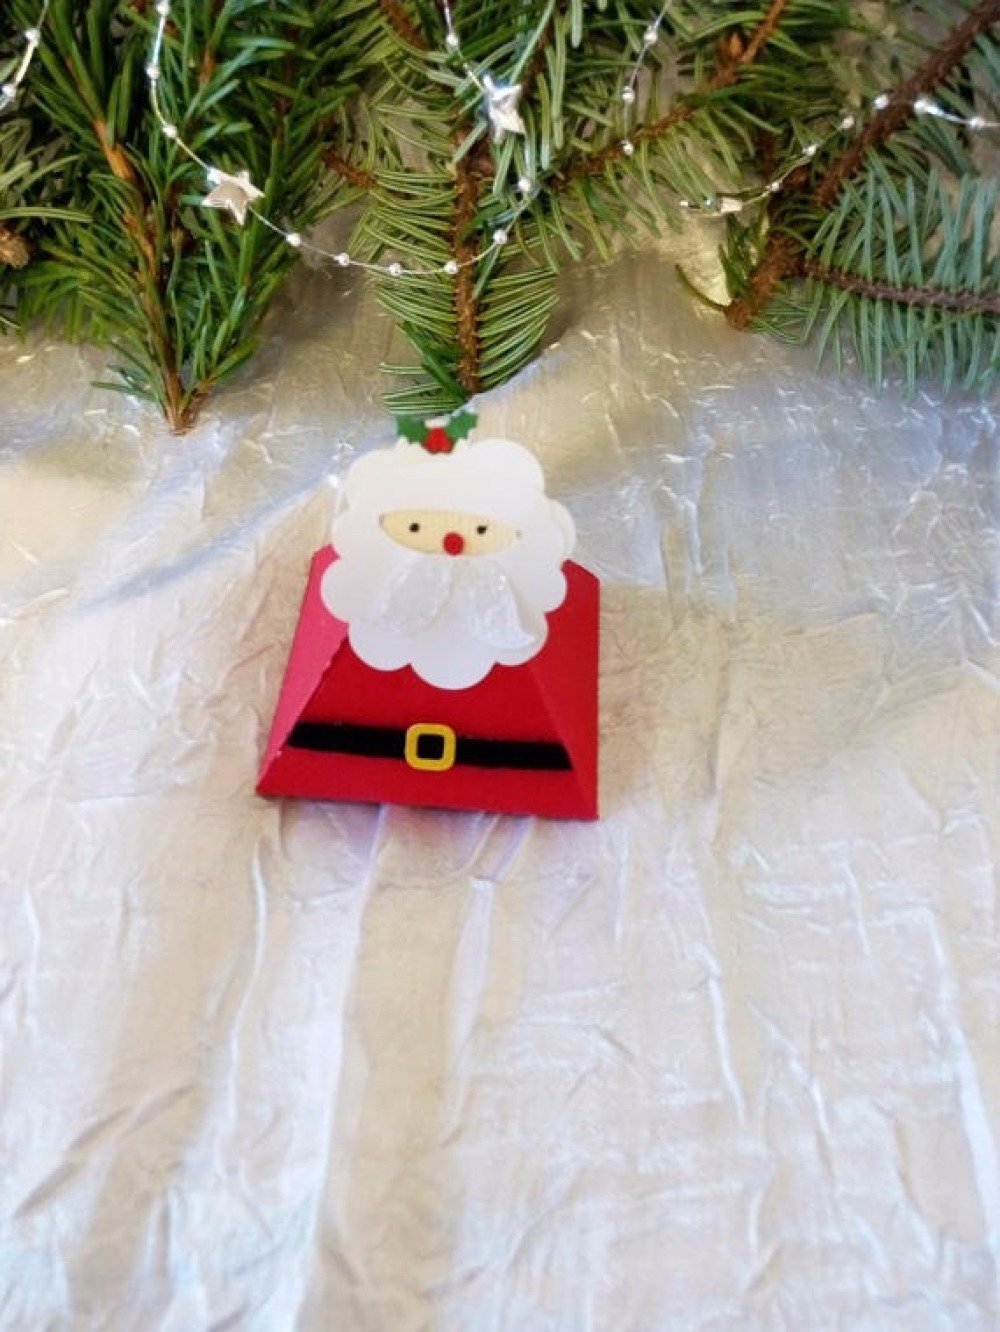 Boite cadeau Noël - DIY : Emballez vos chocolats et bonbons de Noël